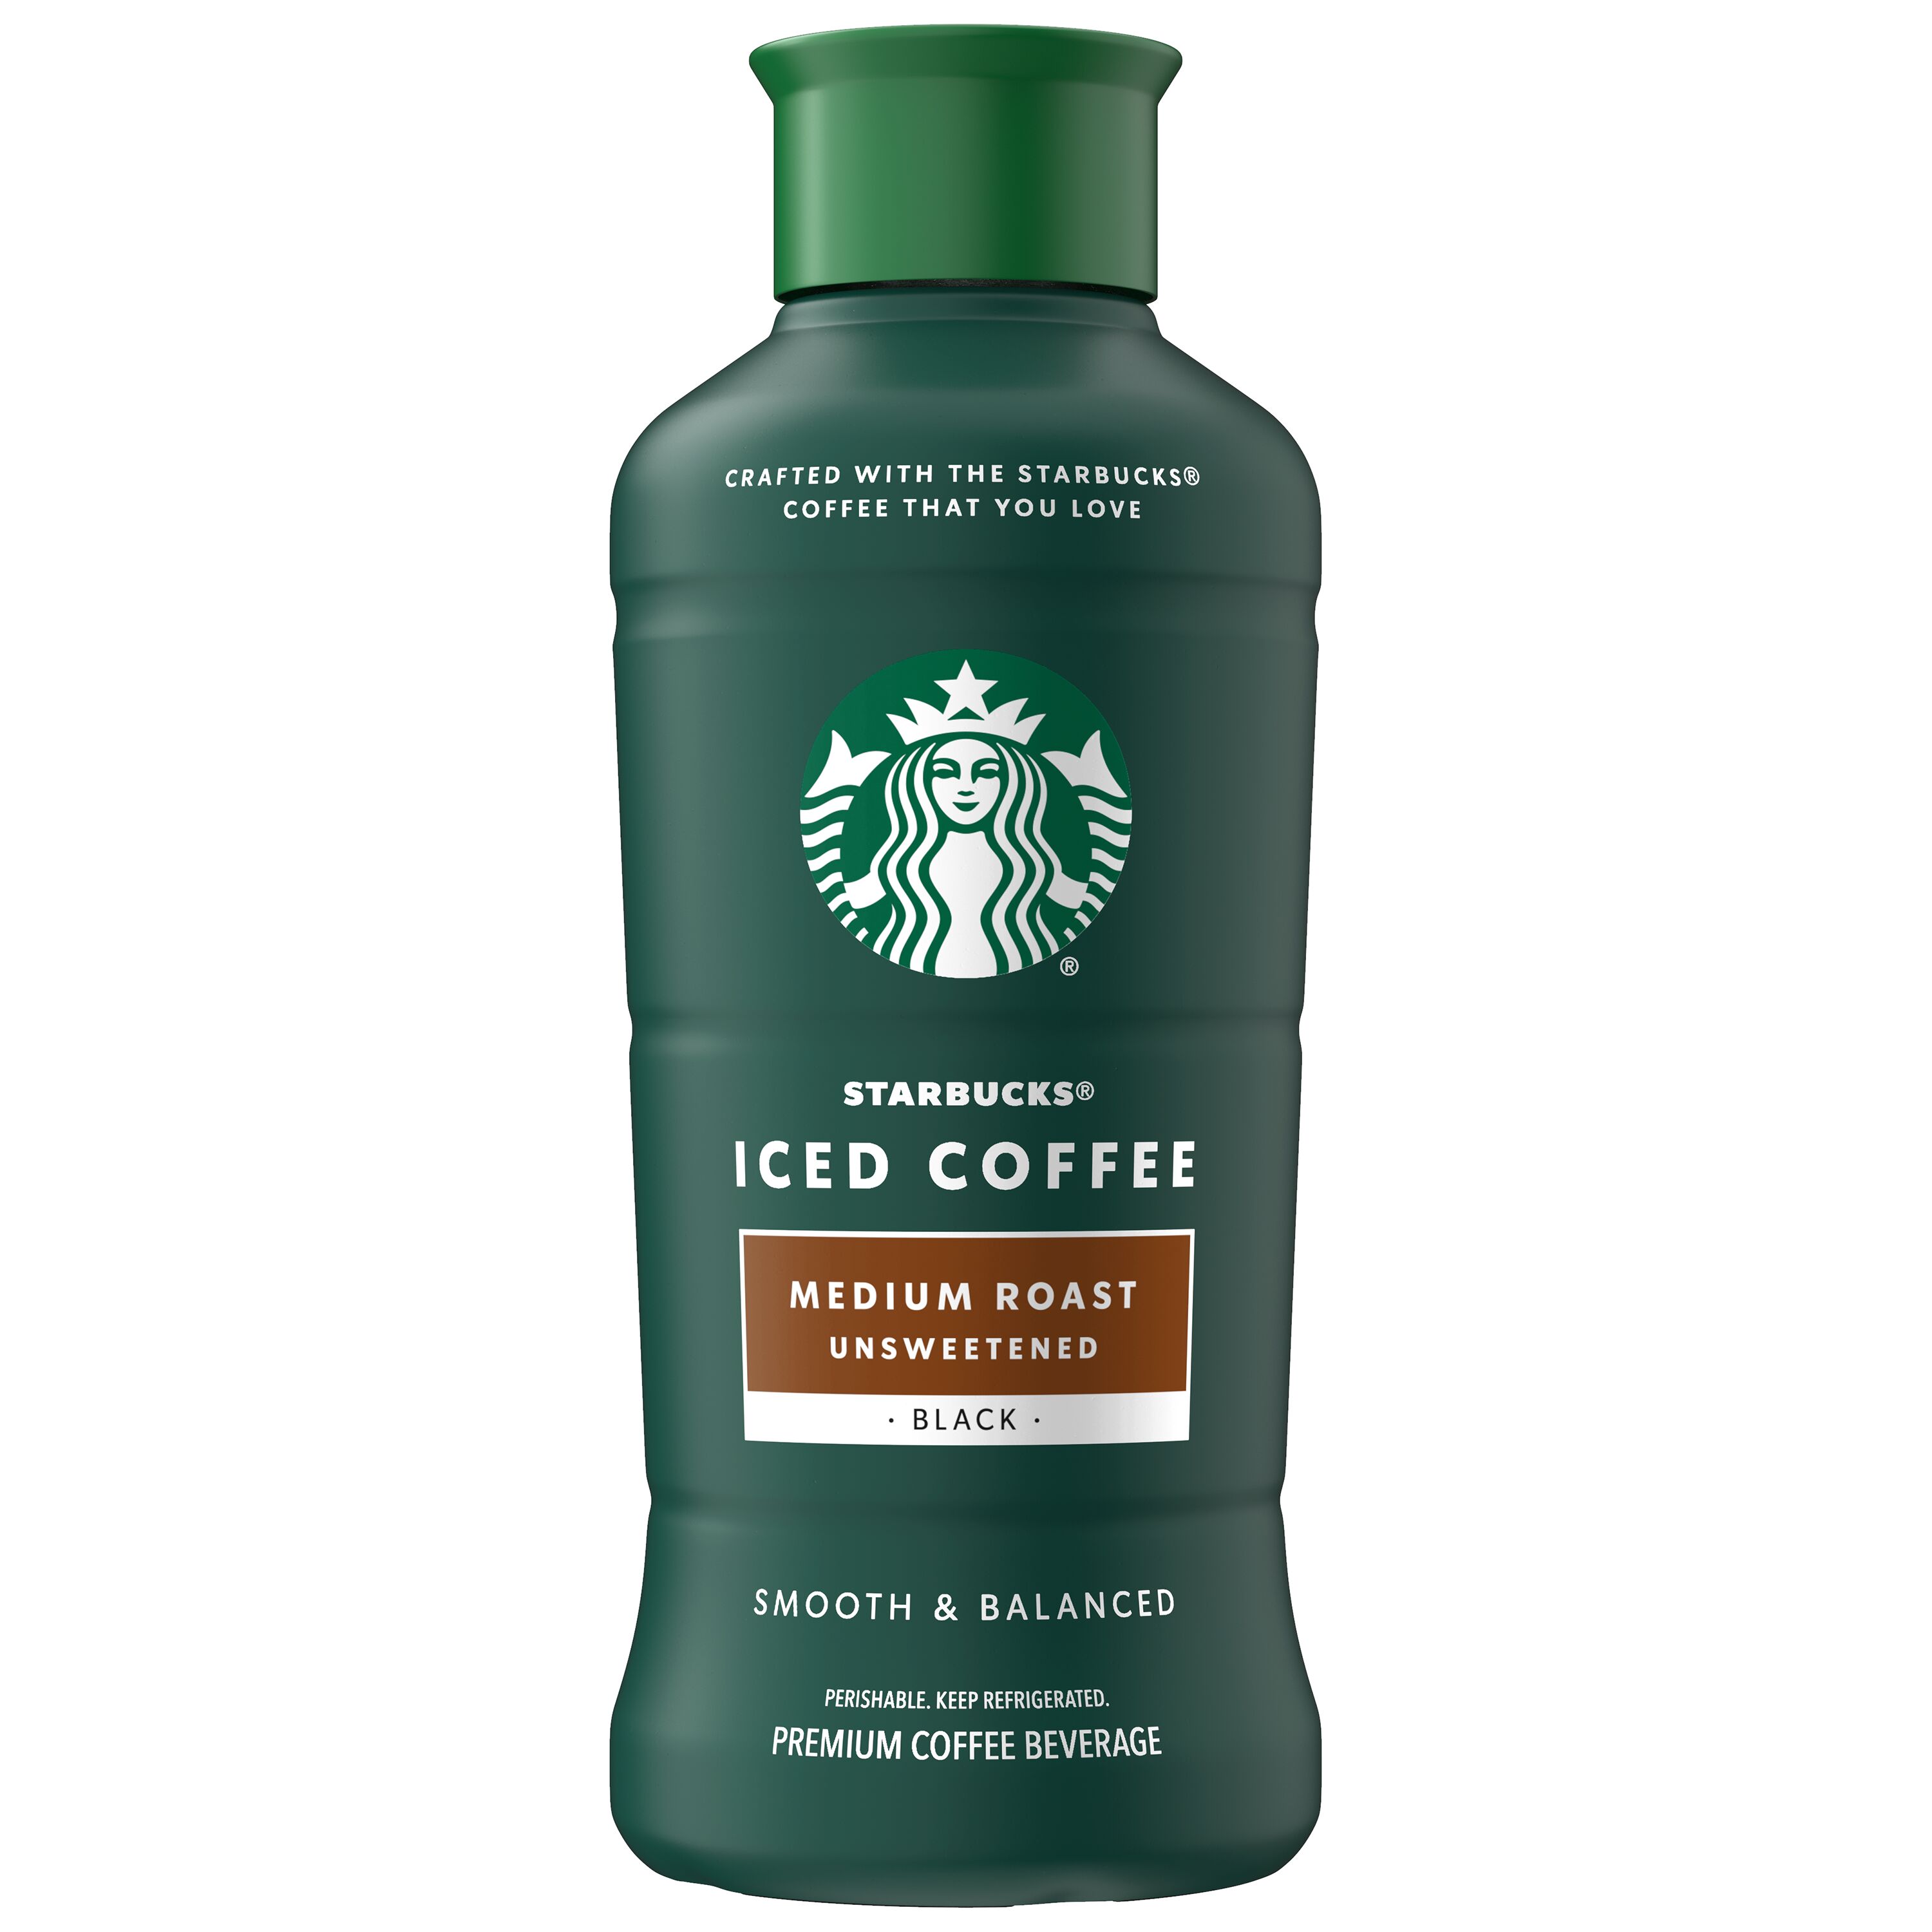 Starbucks Iced Coffee Unsweetened Medium Roast, 48 fl oz - image 1 of 6